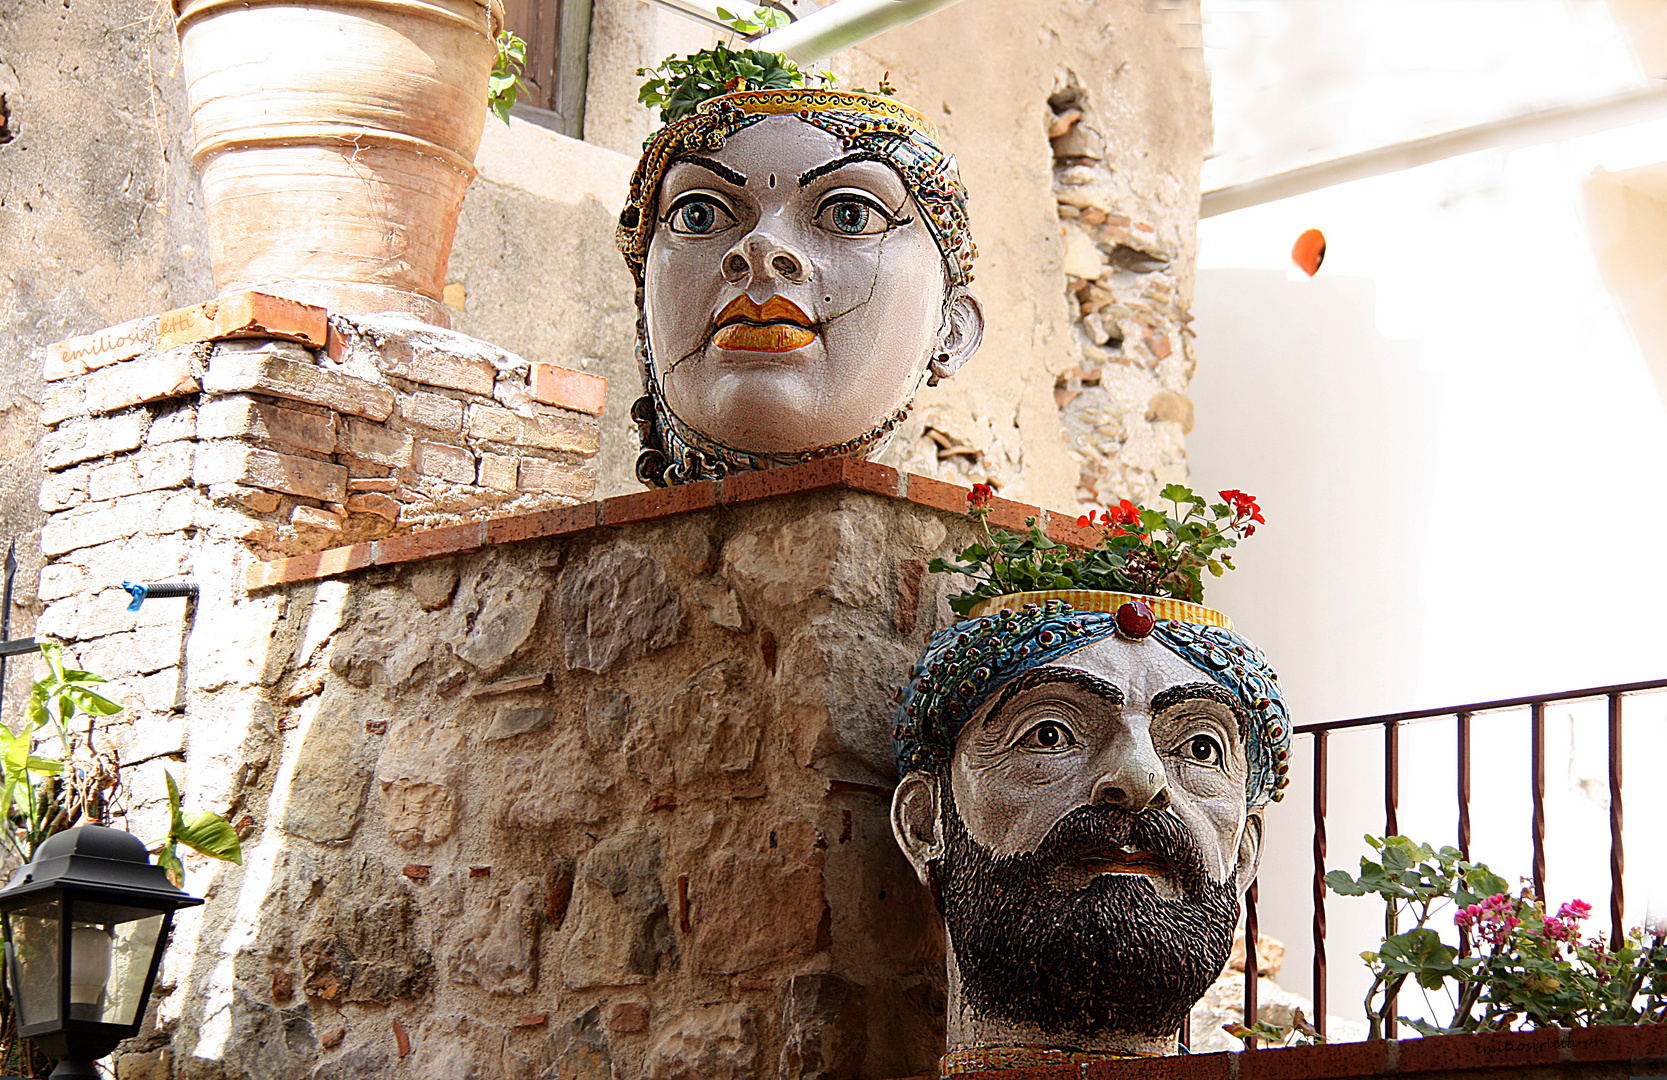 Tipici vasi siciliani -  Typical Sicilian vases